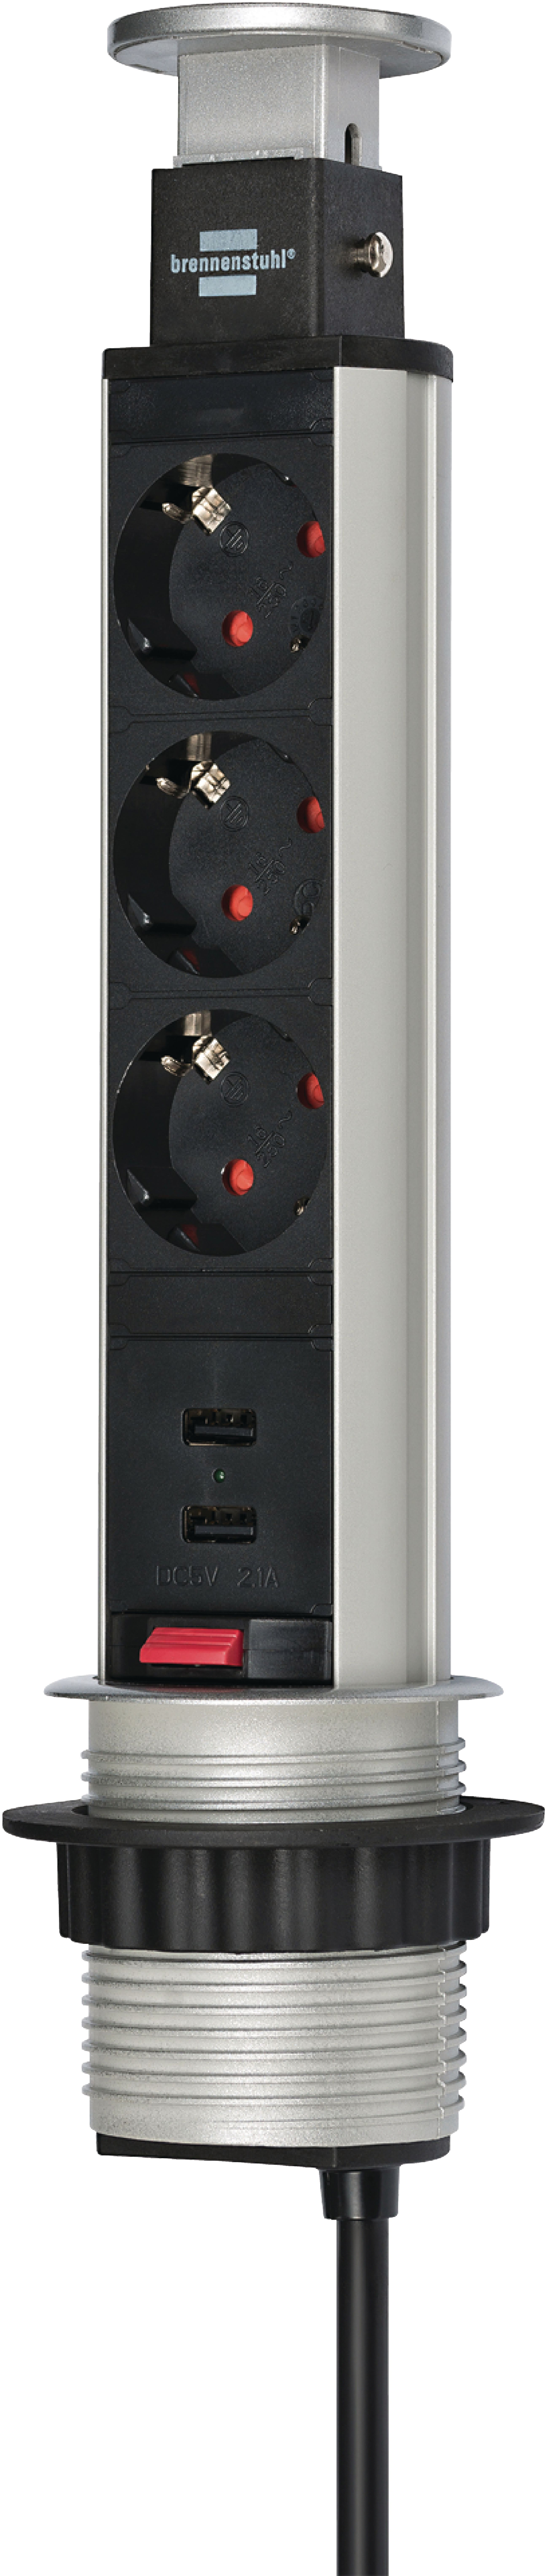 Tower Power zásuvkový sloupek, 3 zásuvky schukko, 2 USB, 2 m Brennenstuhl BN-1396200013